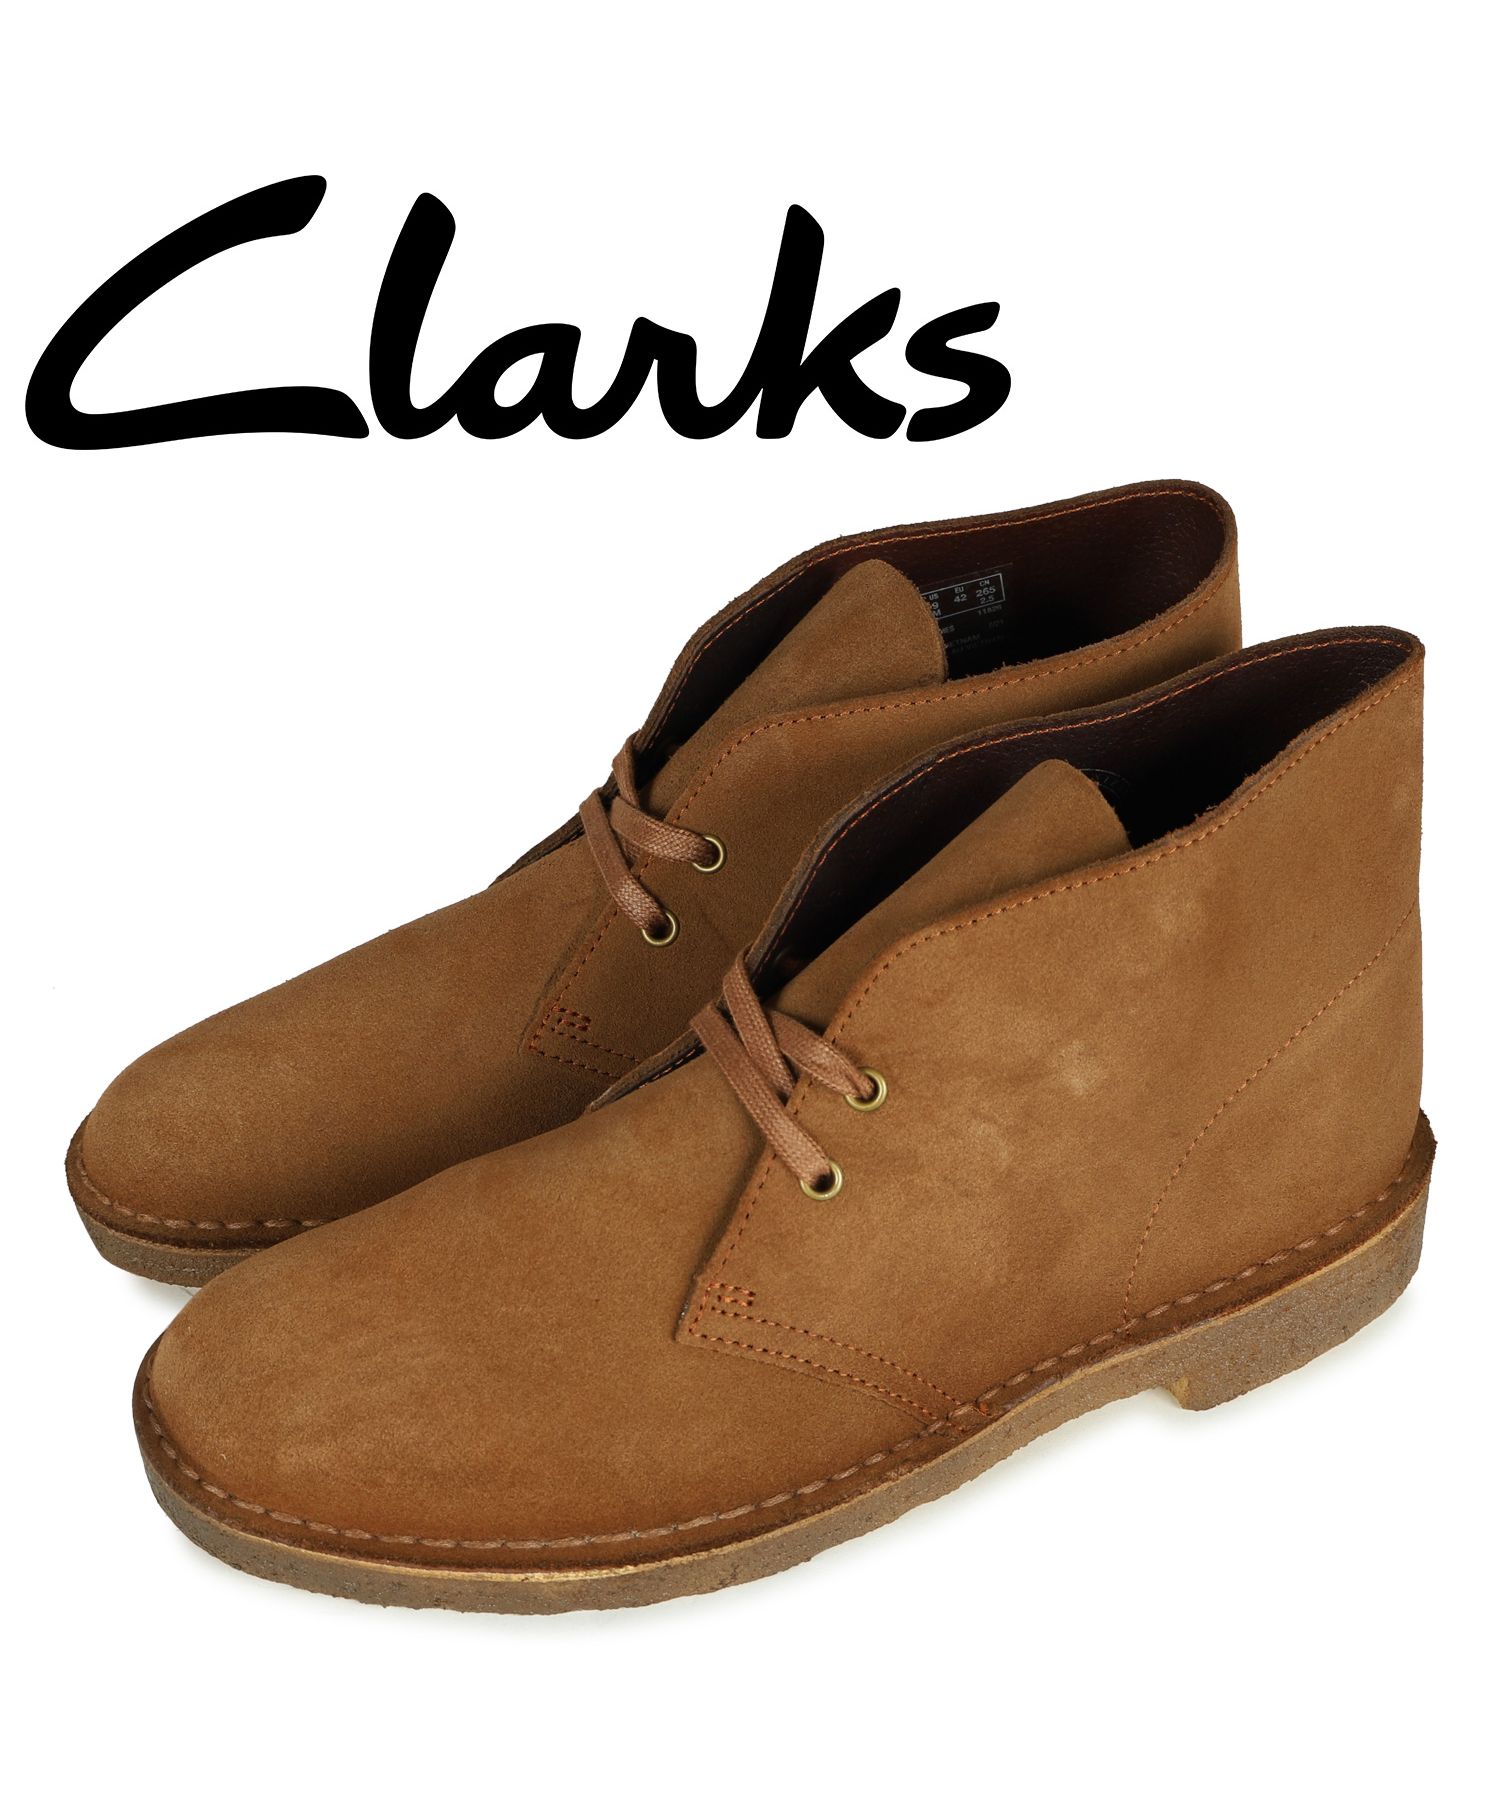 クラークス Clarks デザートブーツ メンズ DESERT BOOT ブラウン